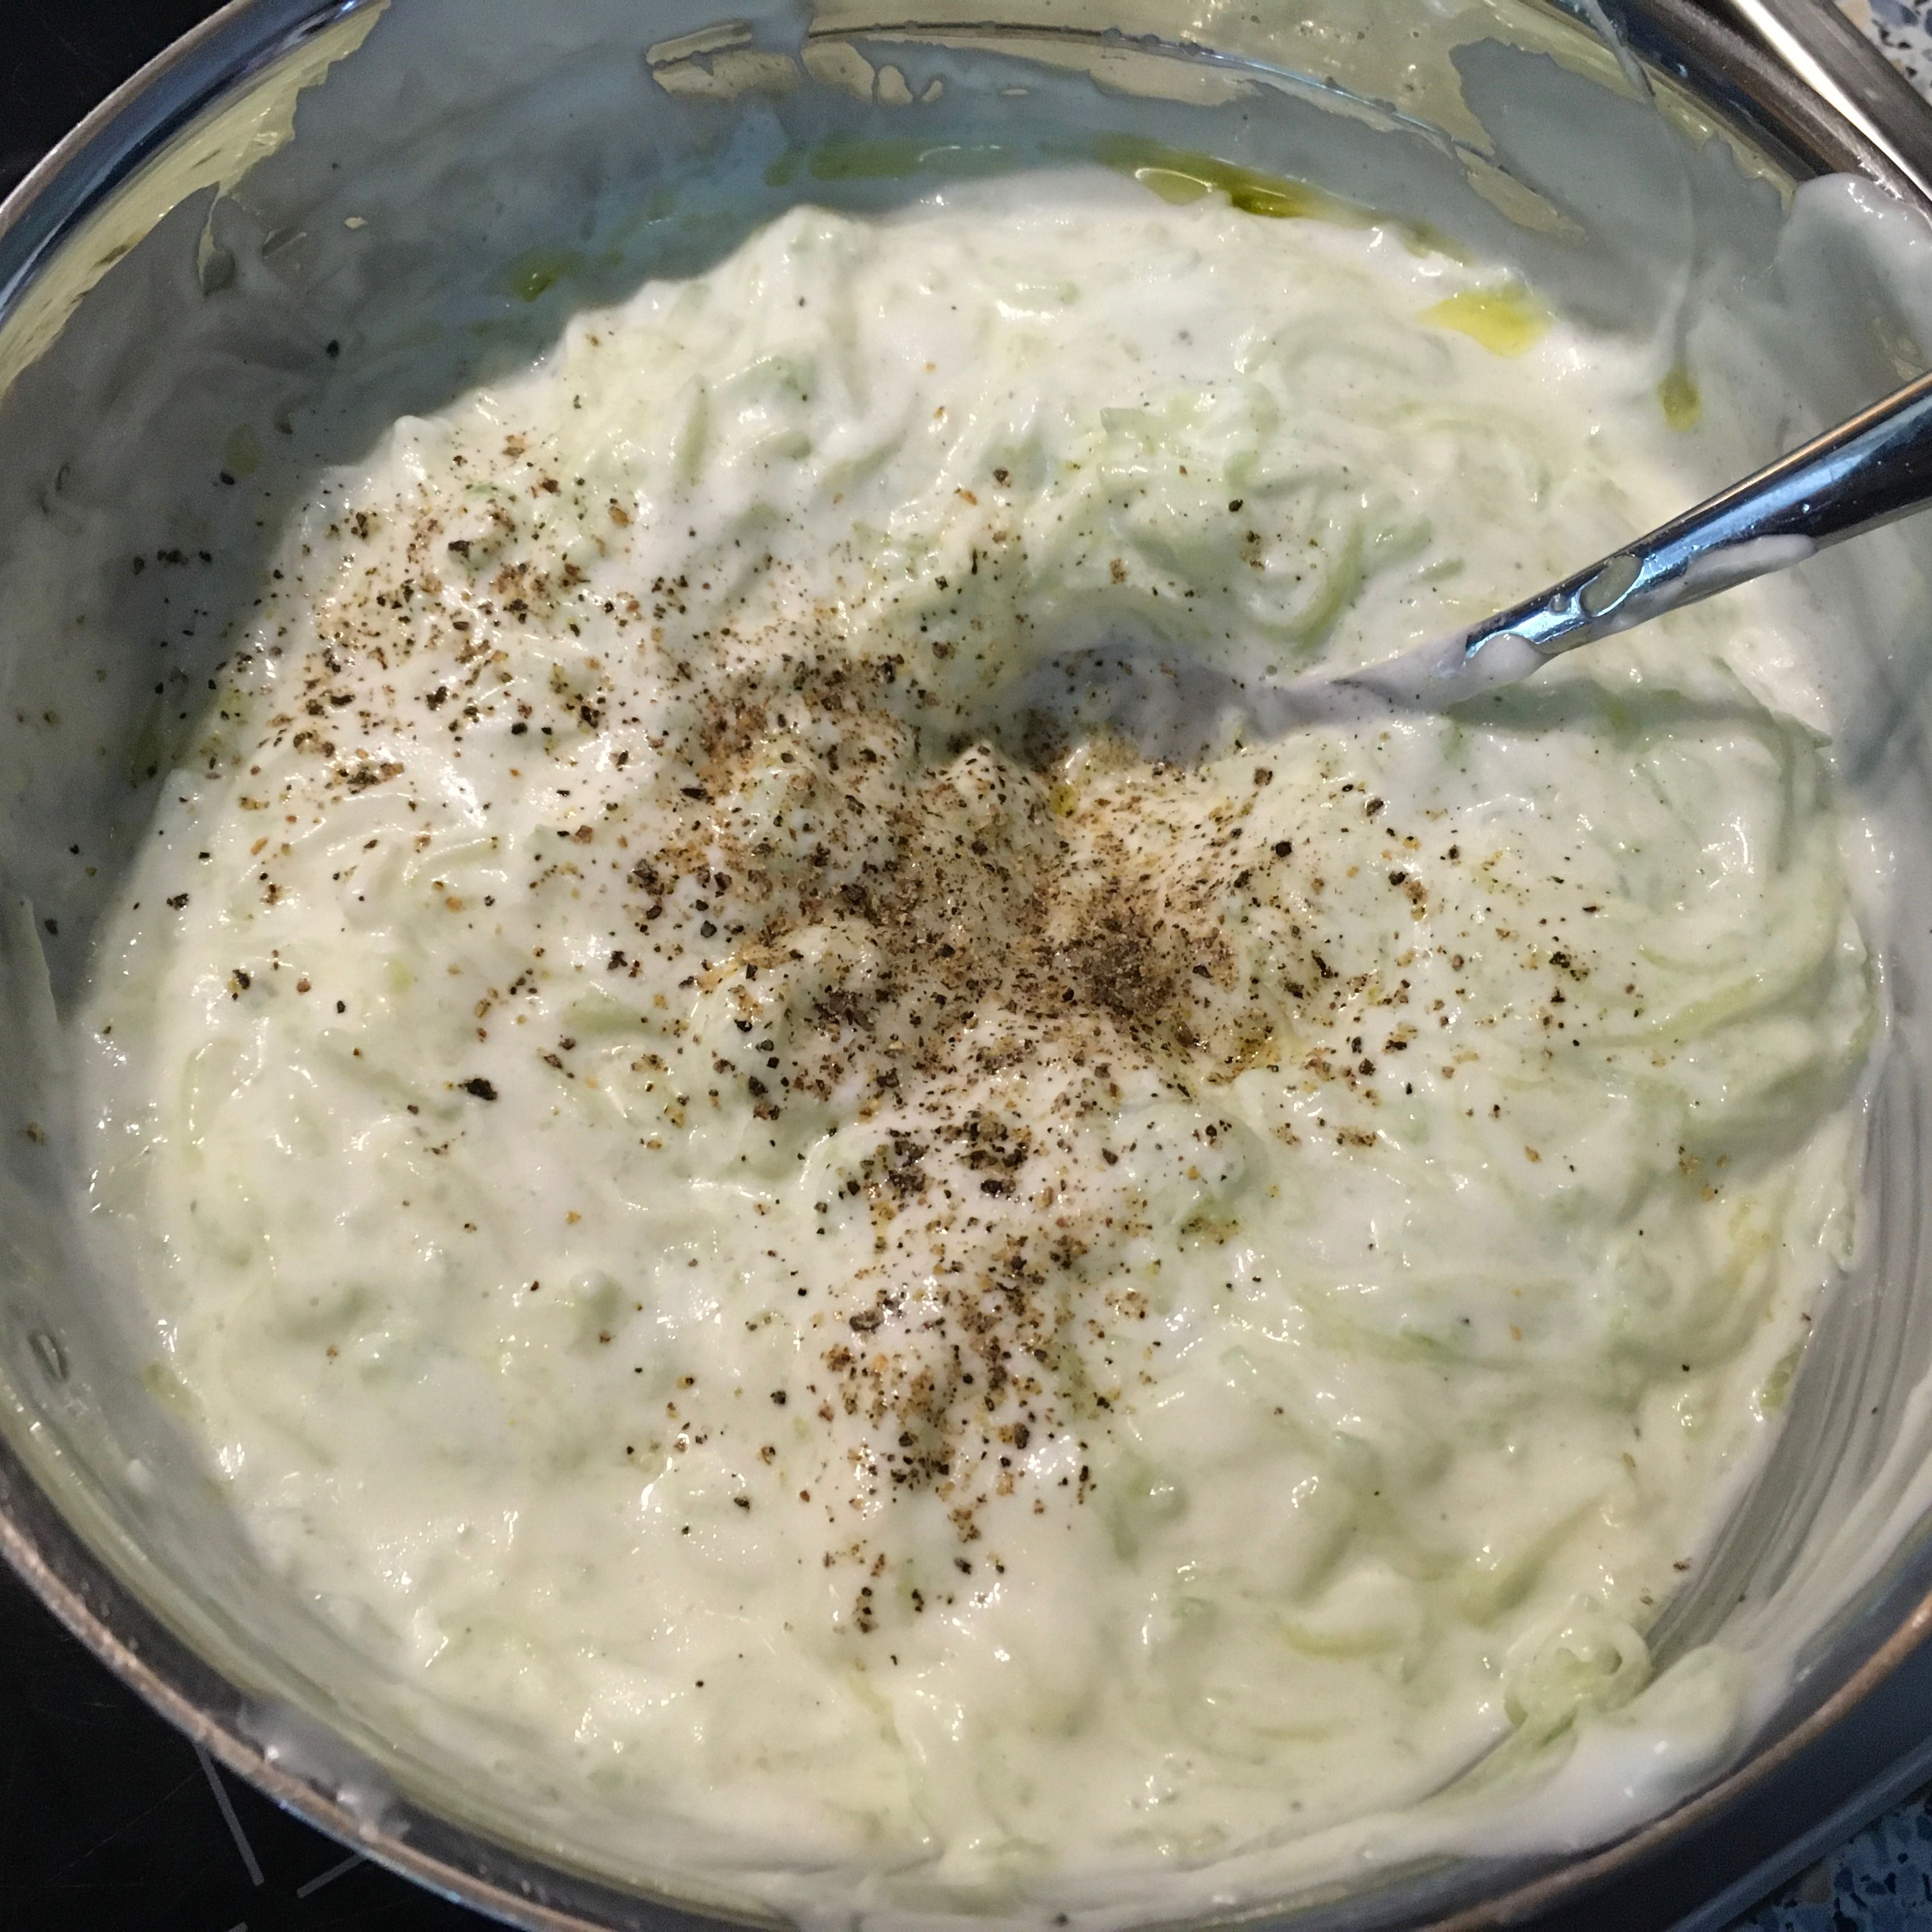 Abgetropfte Gurke und Knoblauch mit Joghurt und Olivenöl vermischen und pfeffern. Servieren und schmecken lassen :-)